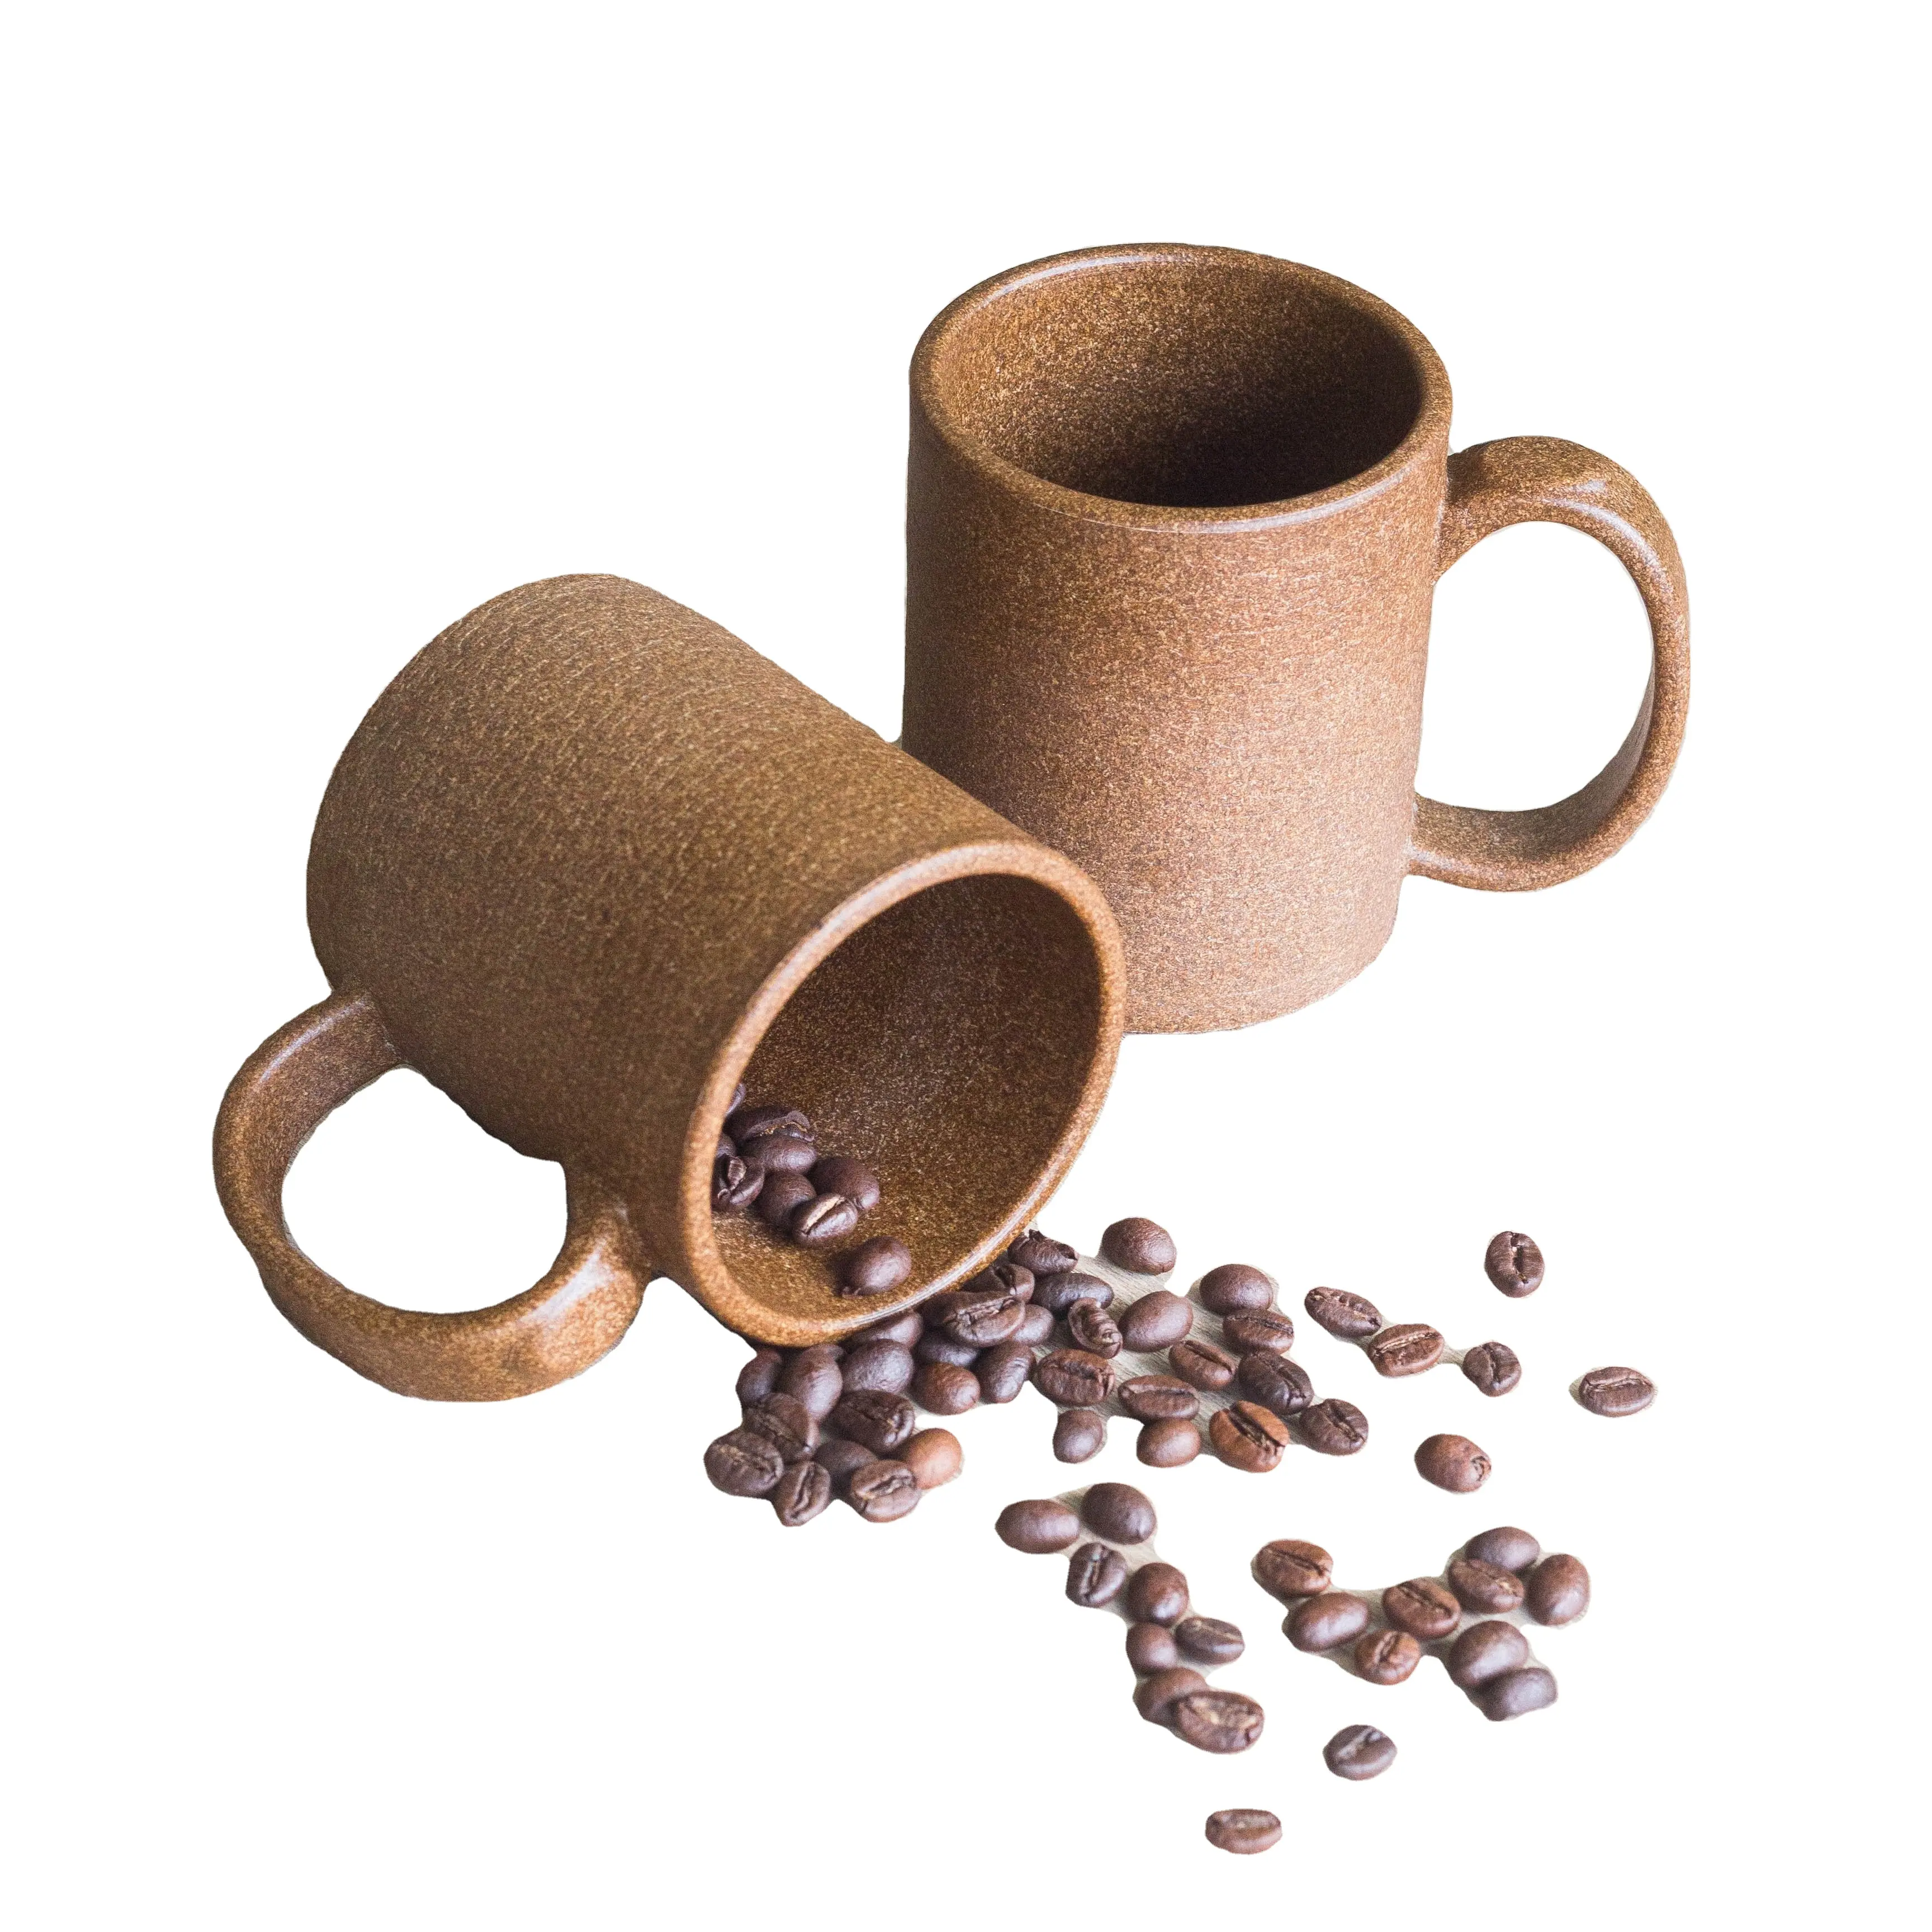 Nachhaltiges umwelt freundliches Produkt 2021 Top Trend ing 2021 15oz Kaffeesatz Tassen Tassen Erneuerbare Tassen Nachhaltige Tasse